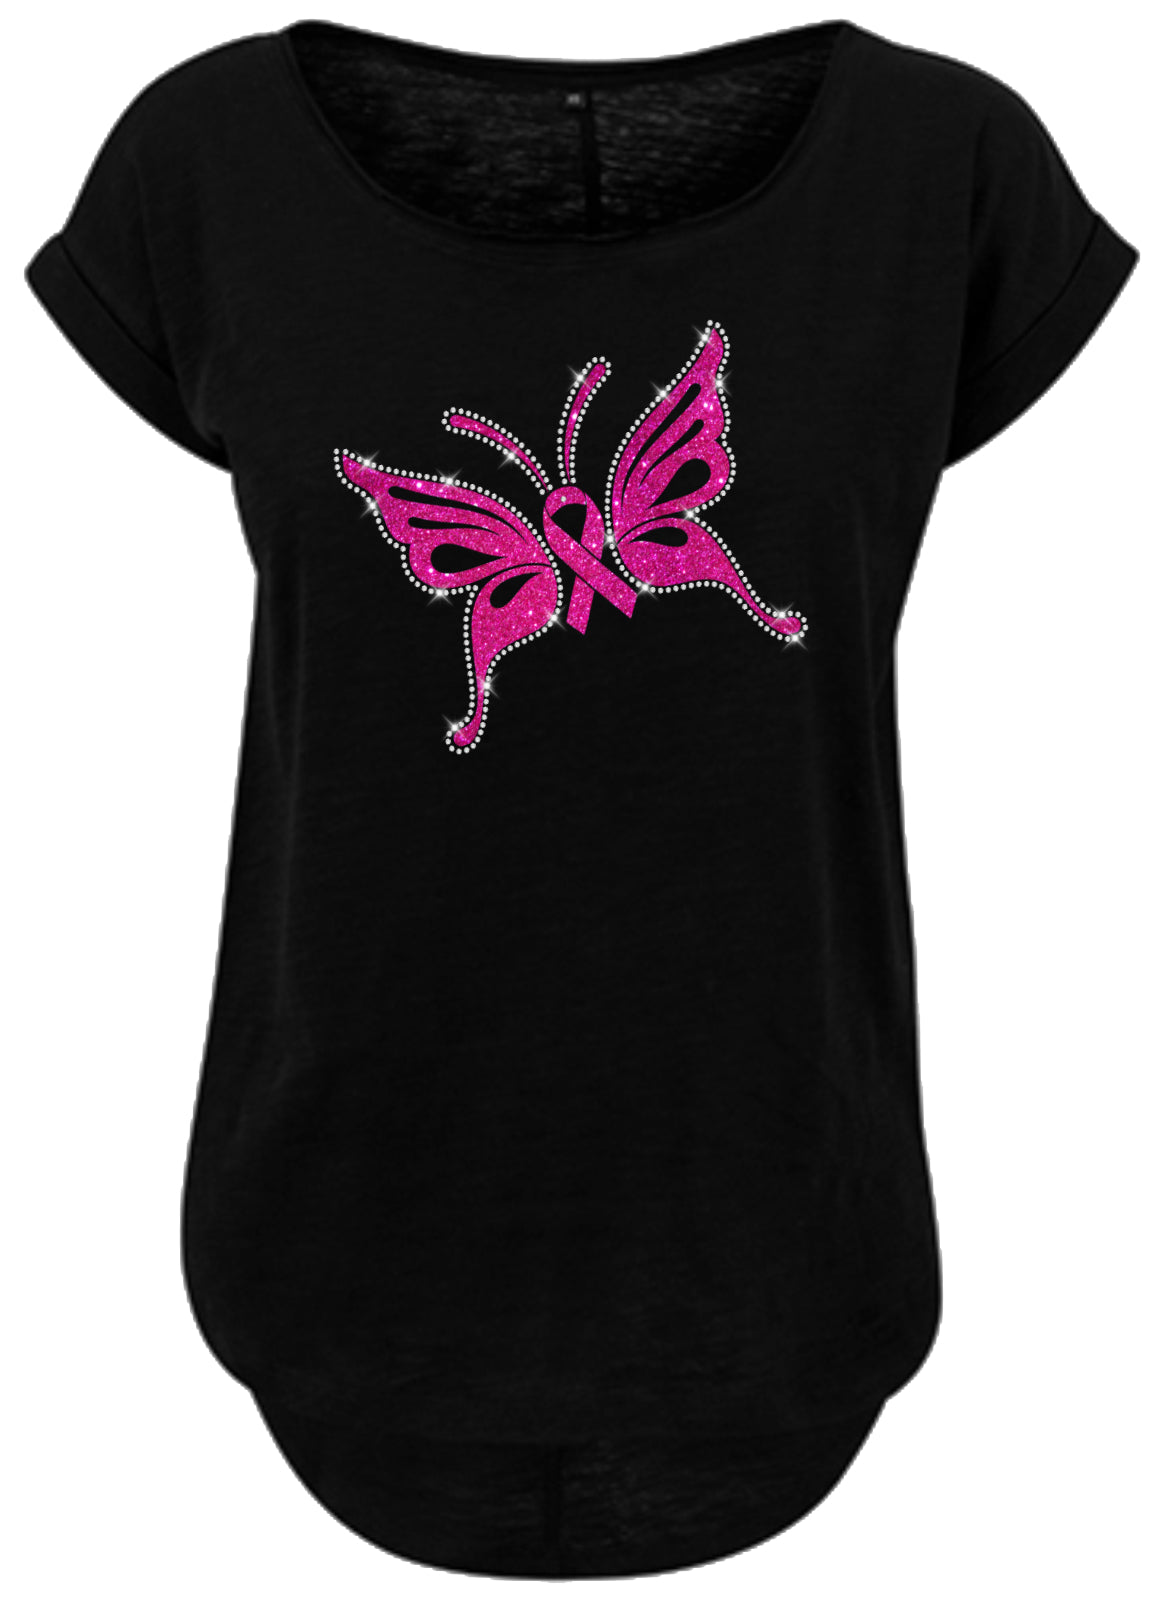 Blingeling®Shirts Damen T-Shirt mit Schmetterling in Pink Glitzer und Strass Umrandung